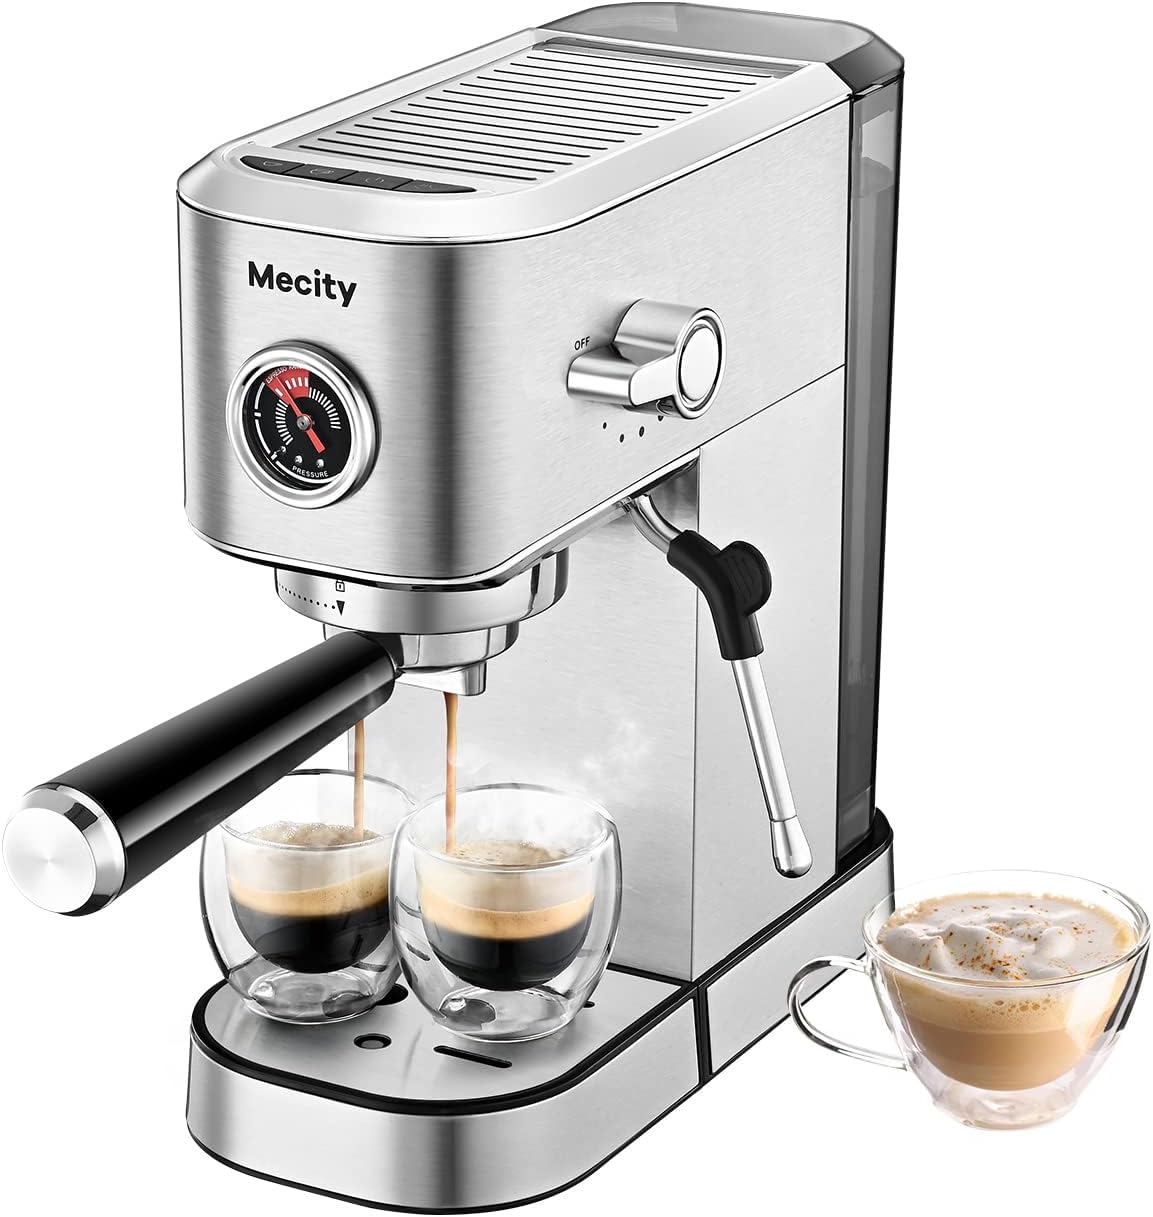 Mecity 20 Bar Espresso Machine Review